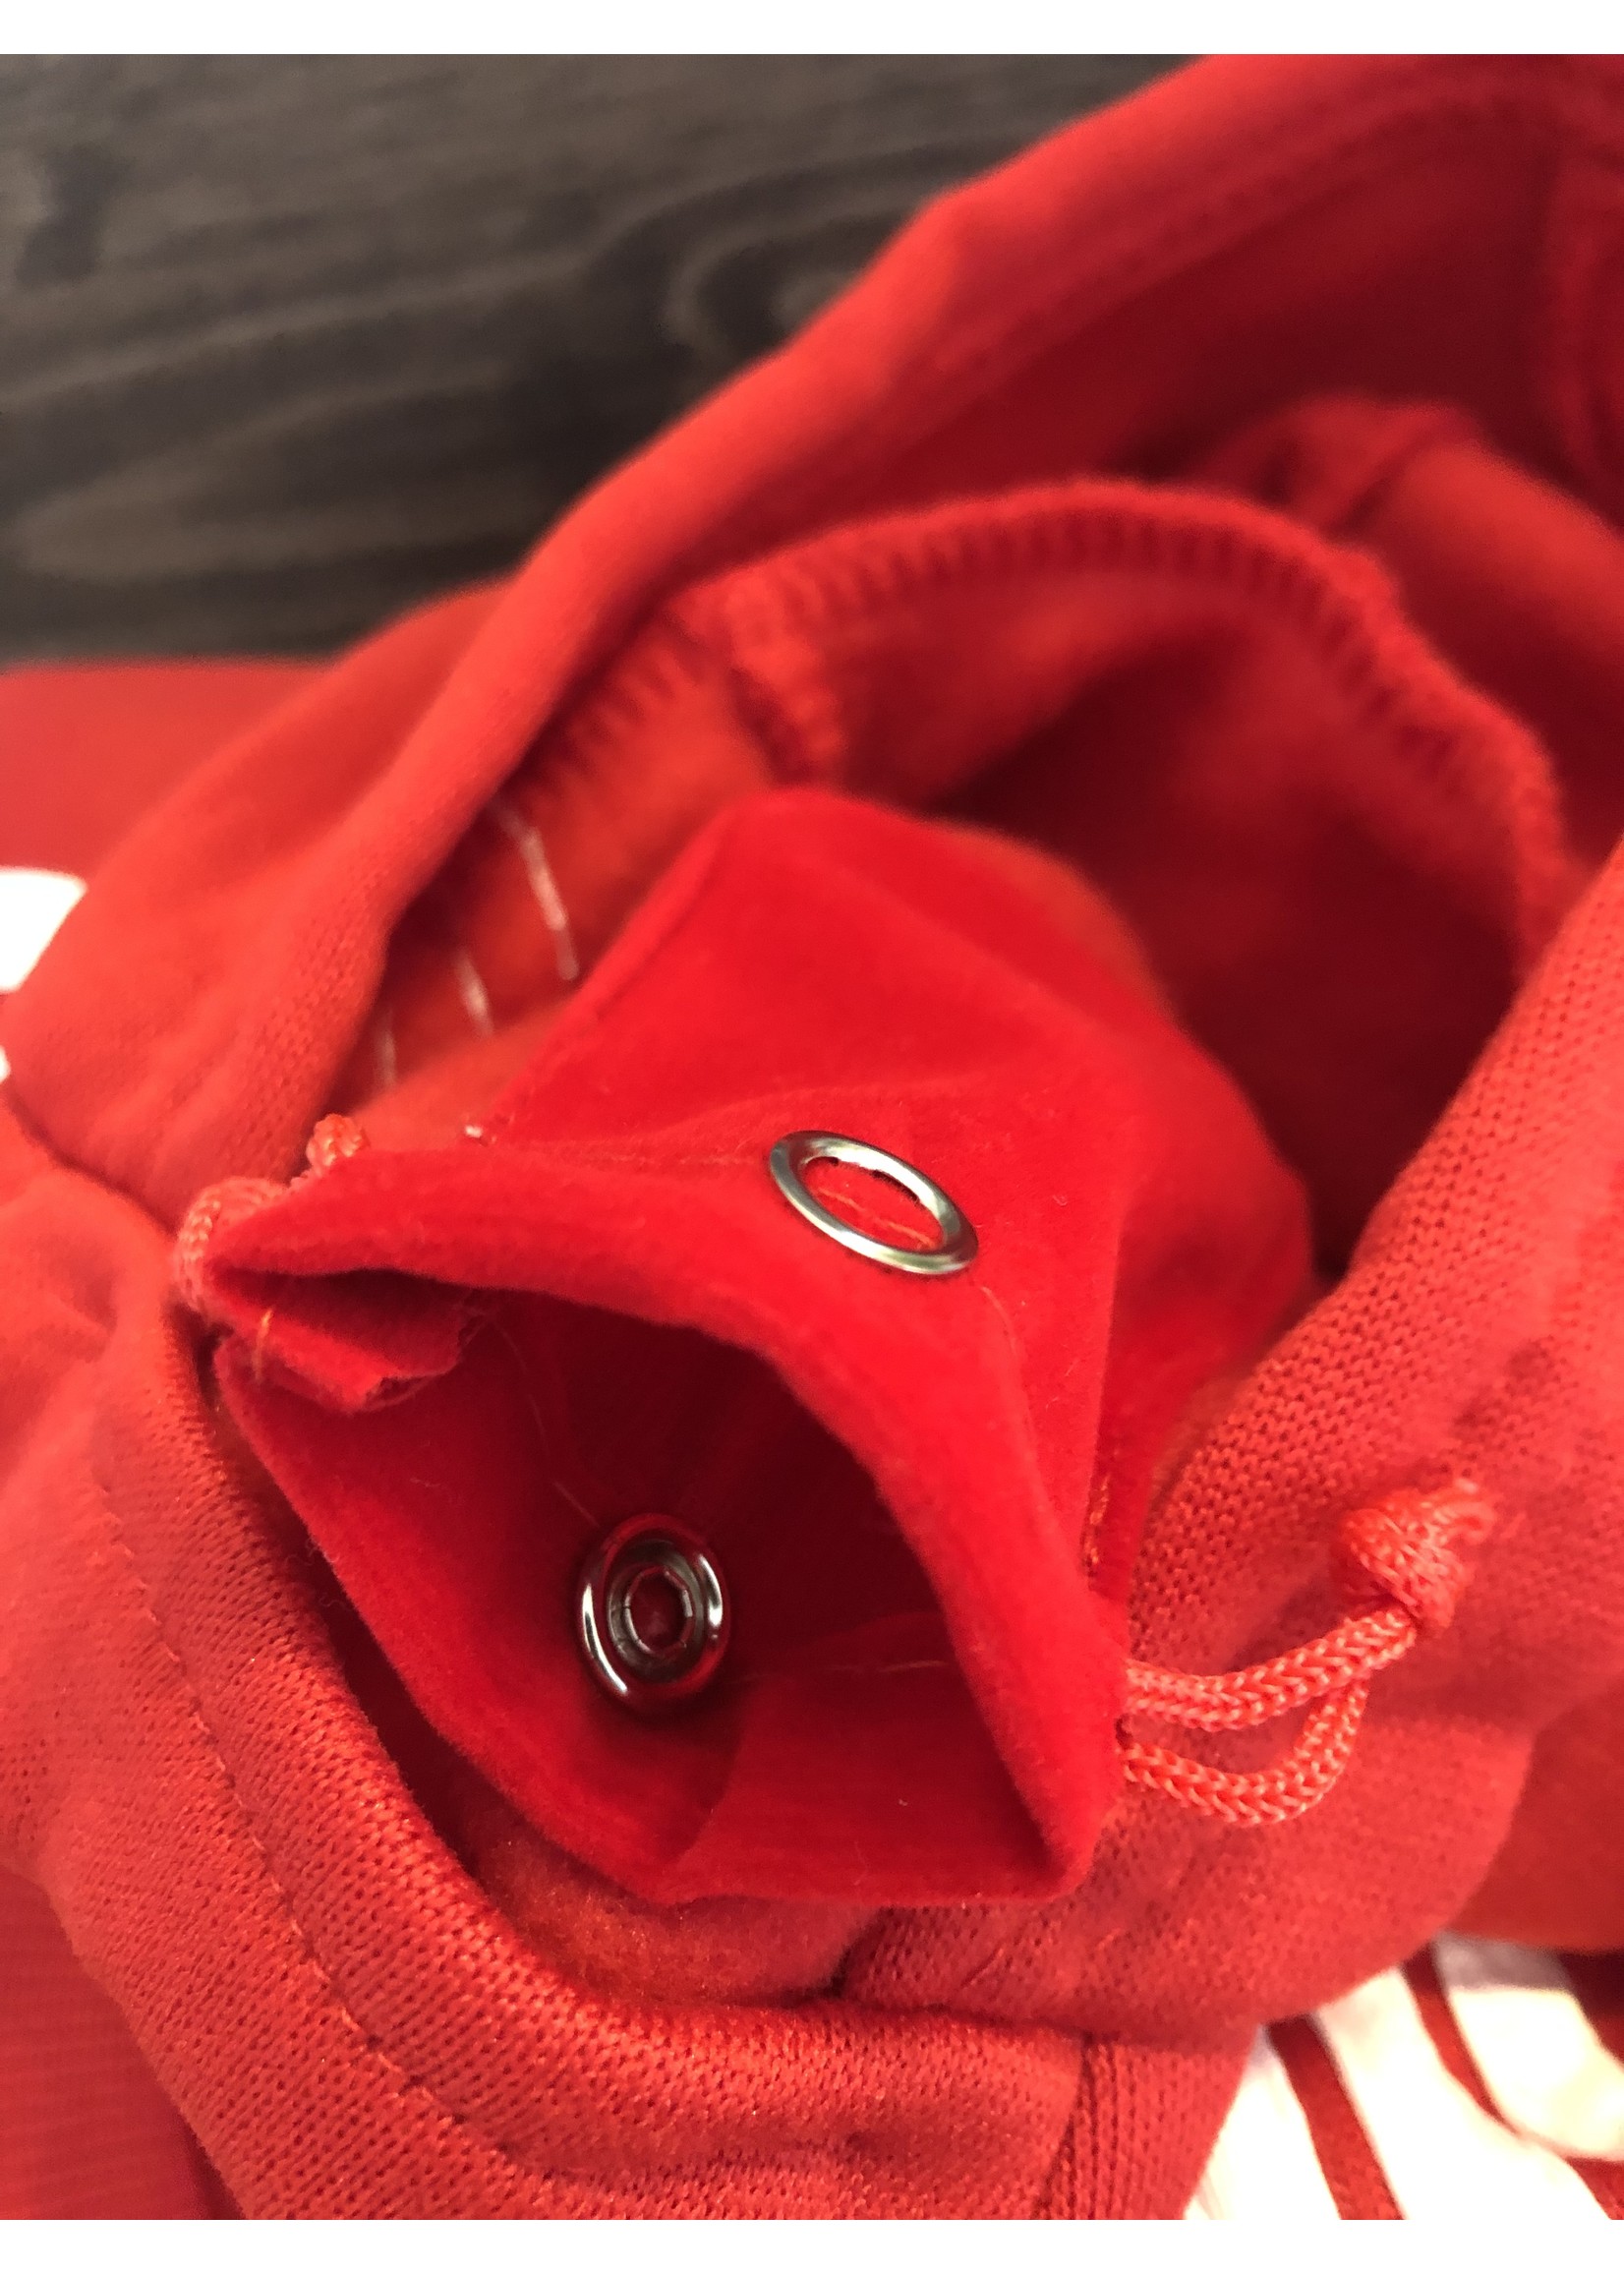 chandail adidog pochette intégrée-rouge-VENTE FINALE